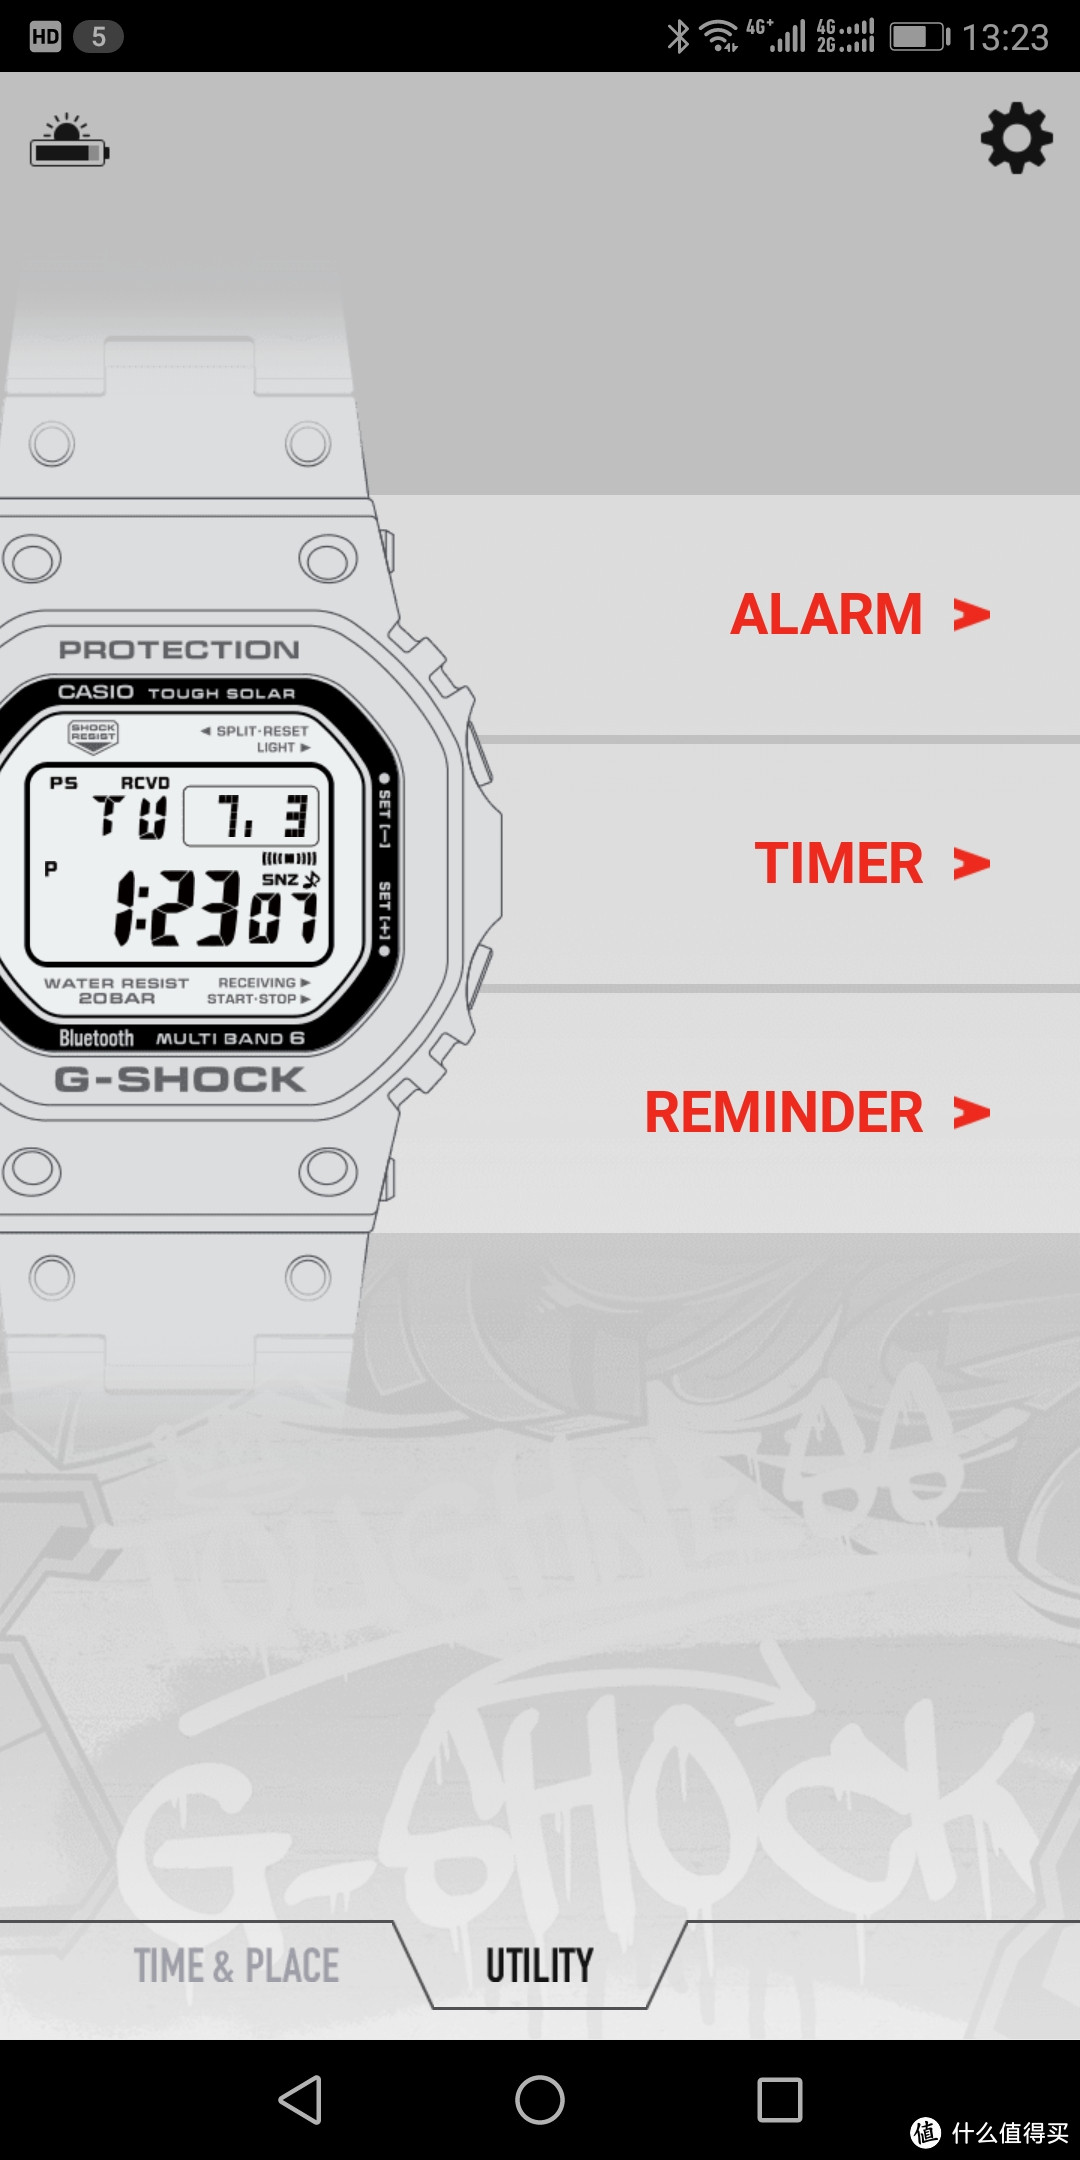 这里可以通过手机设置闹钟、倒计时、事件提醒到手表。